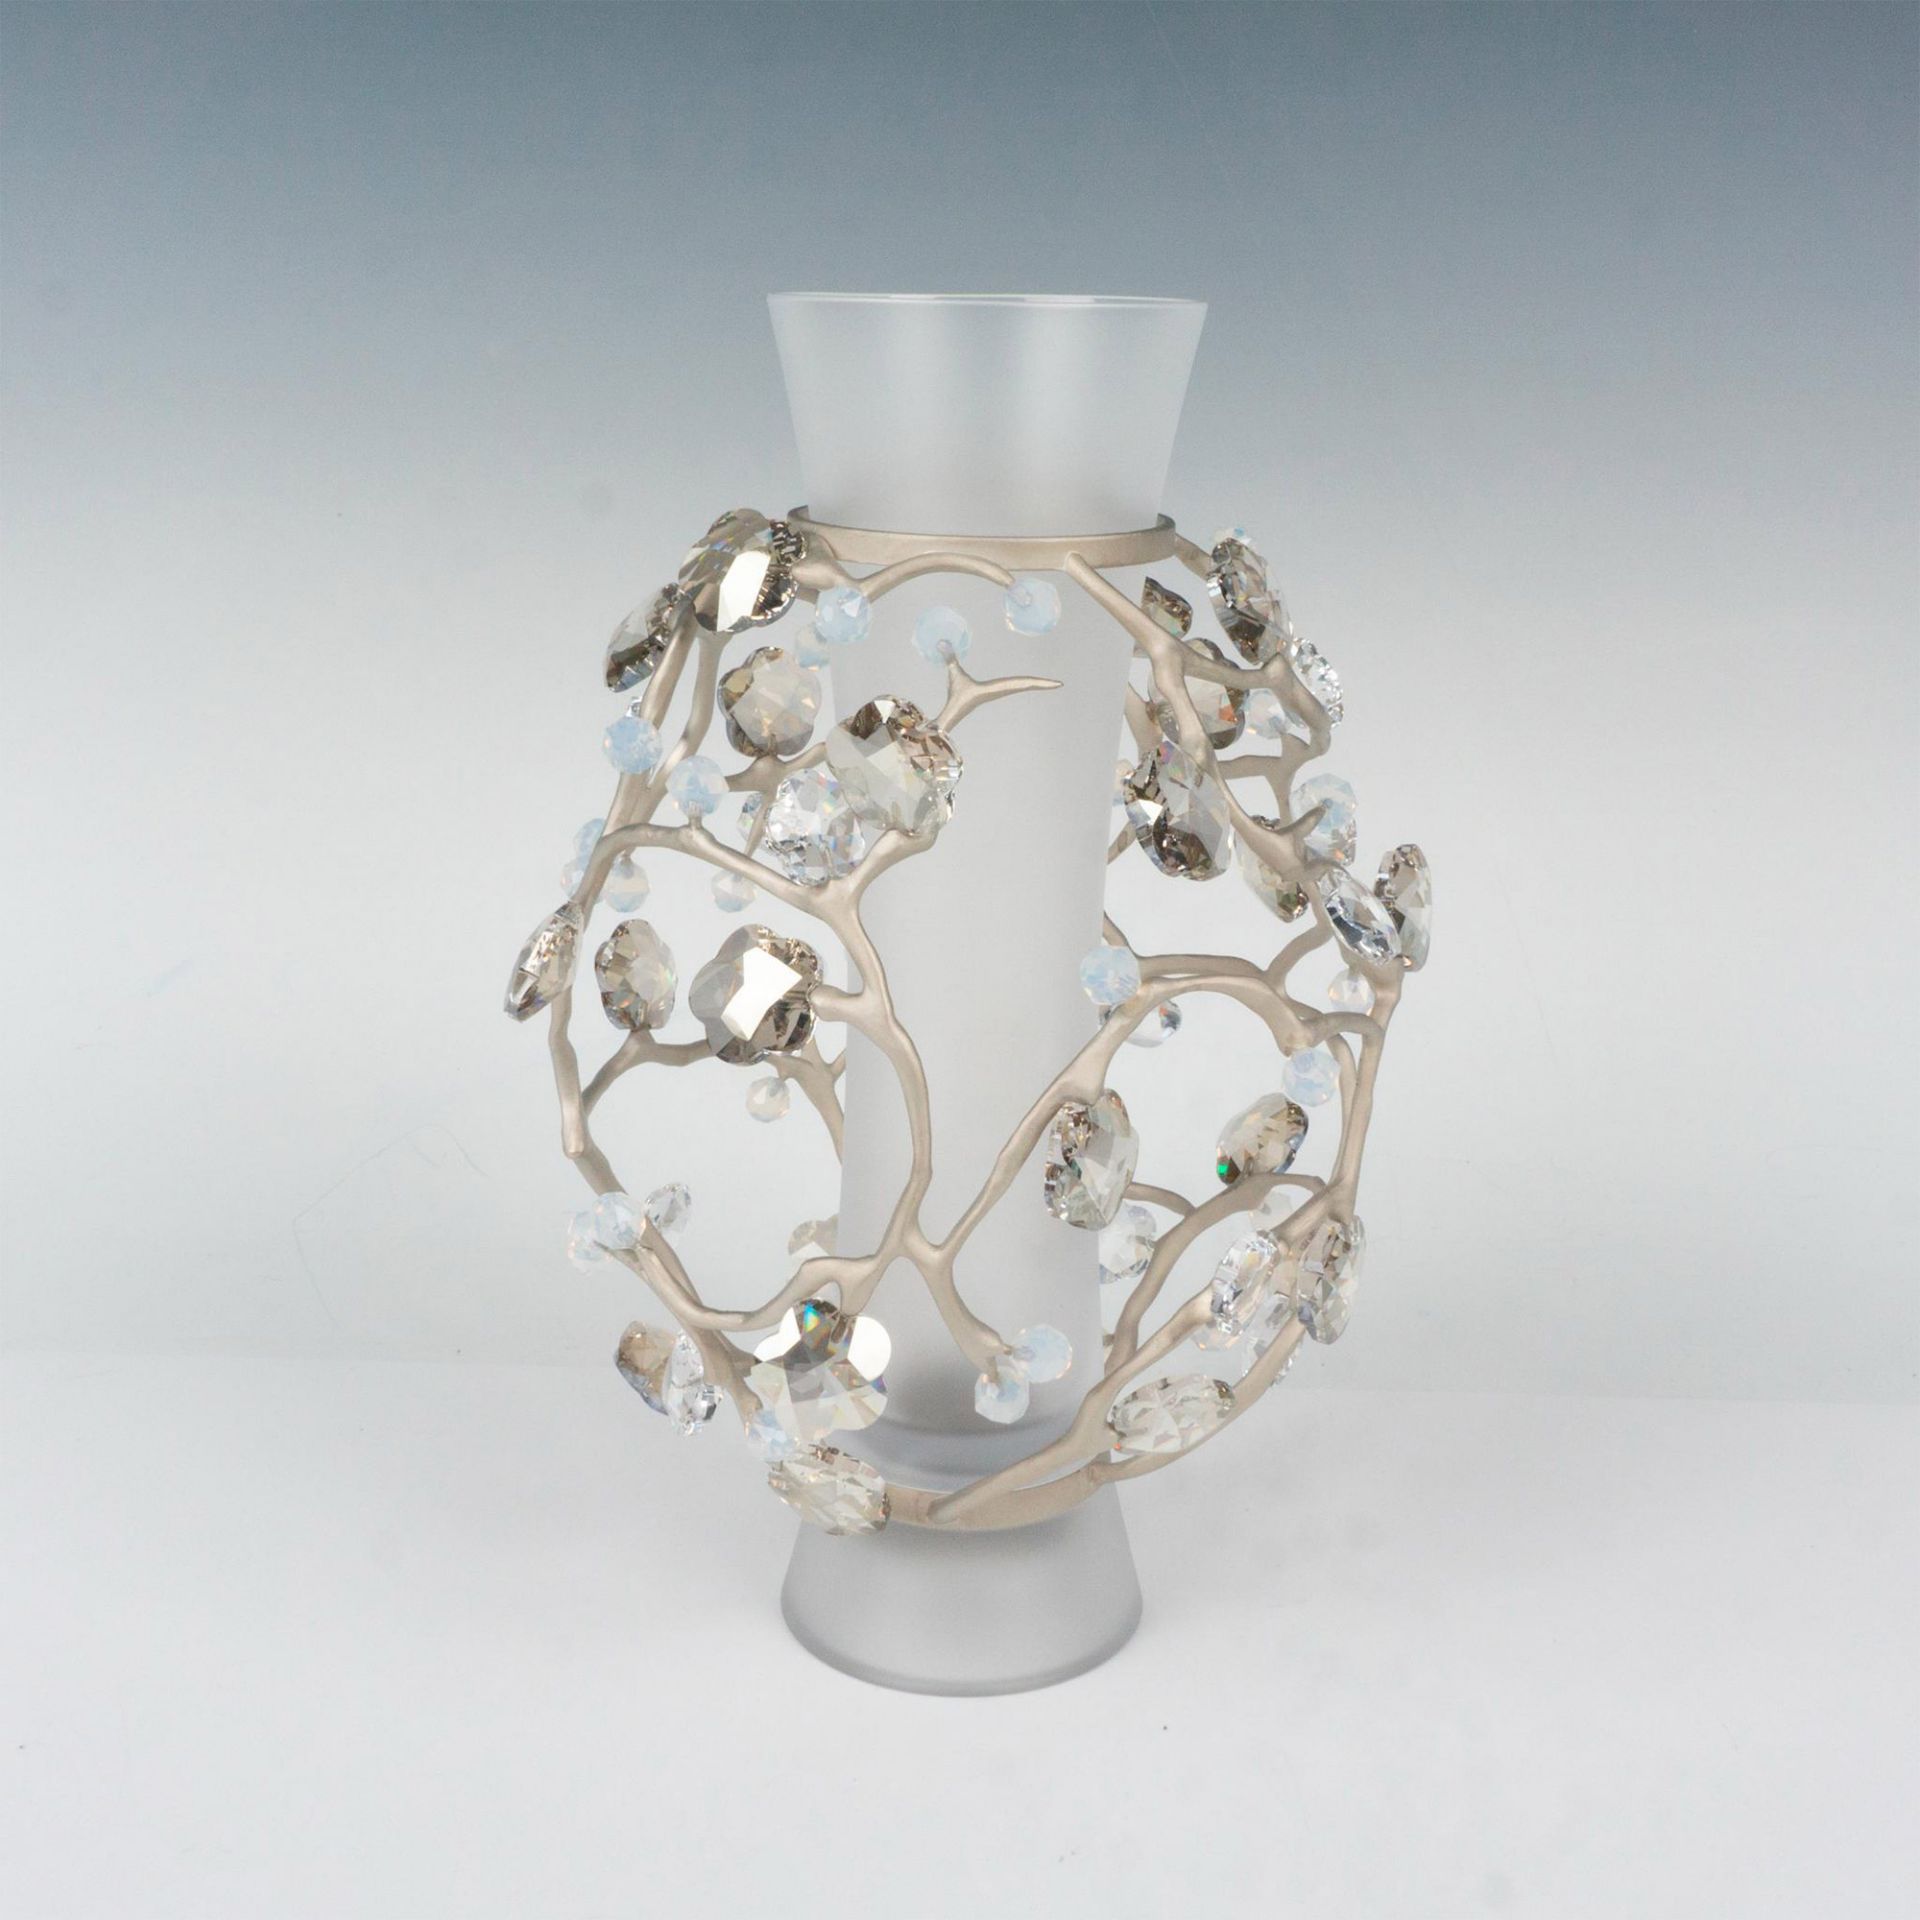 Swarovski Crystal Vase, Blossom - Image 2 of 4